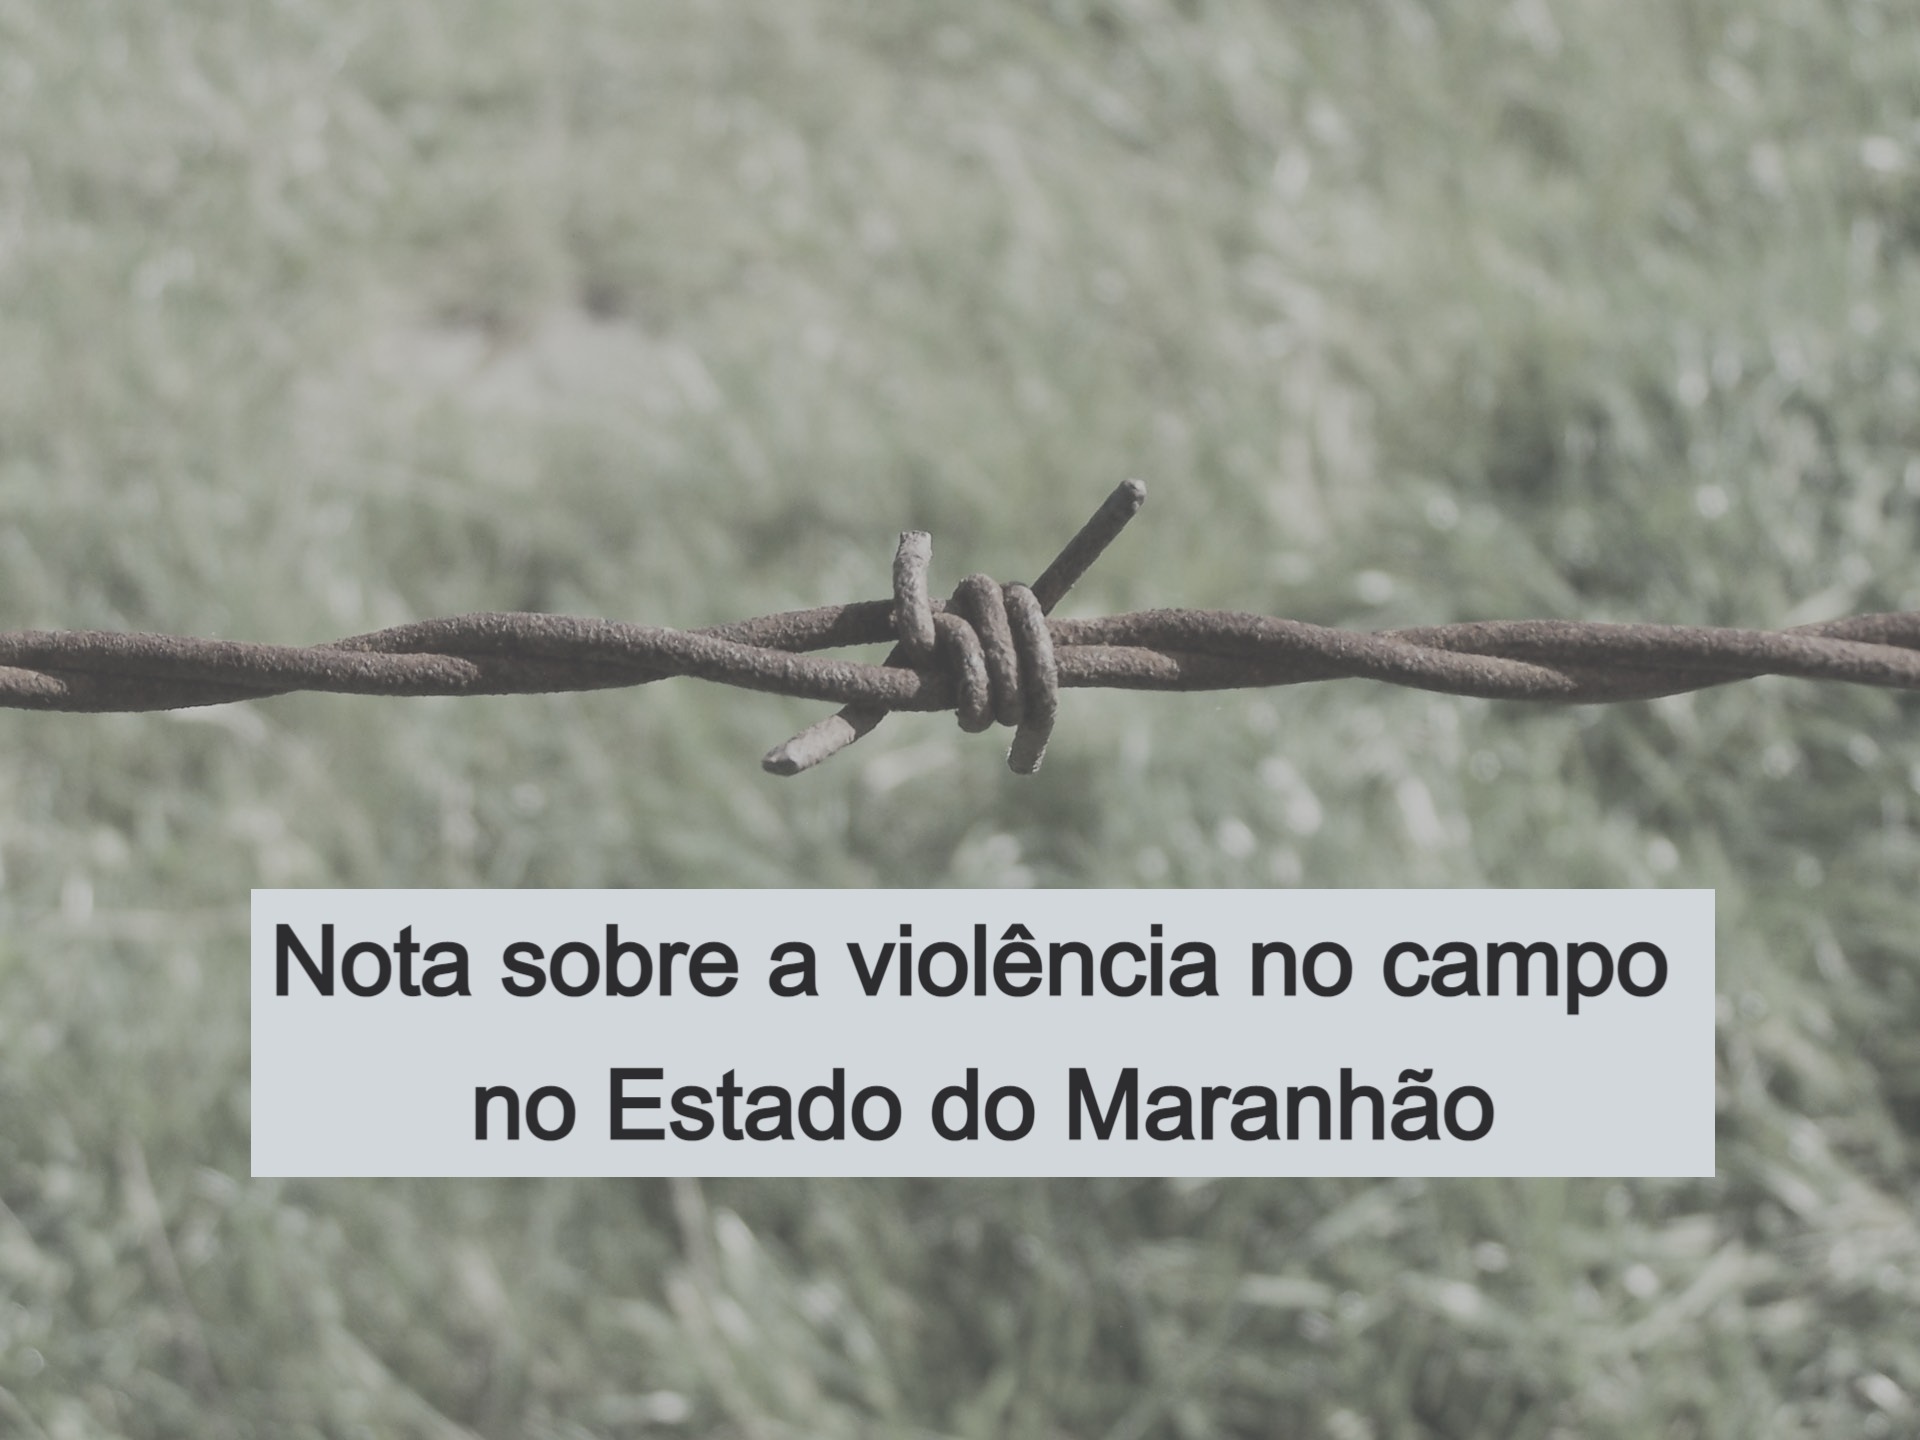 Em nota, Bispos do Maranhão alertam sobre o crescimento dos conflitos agrários